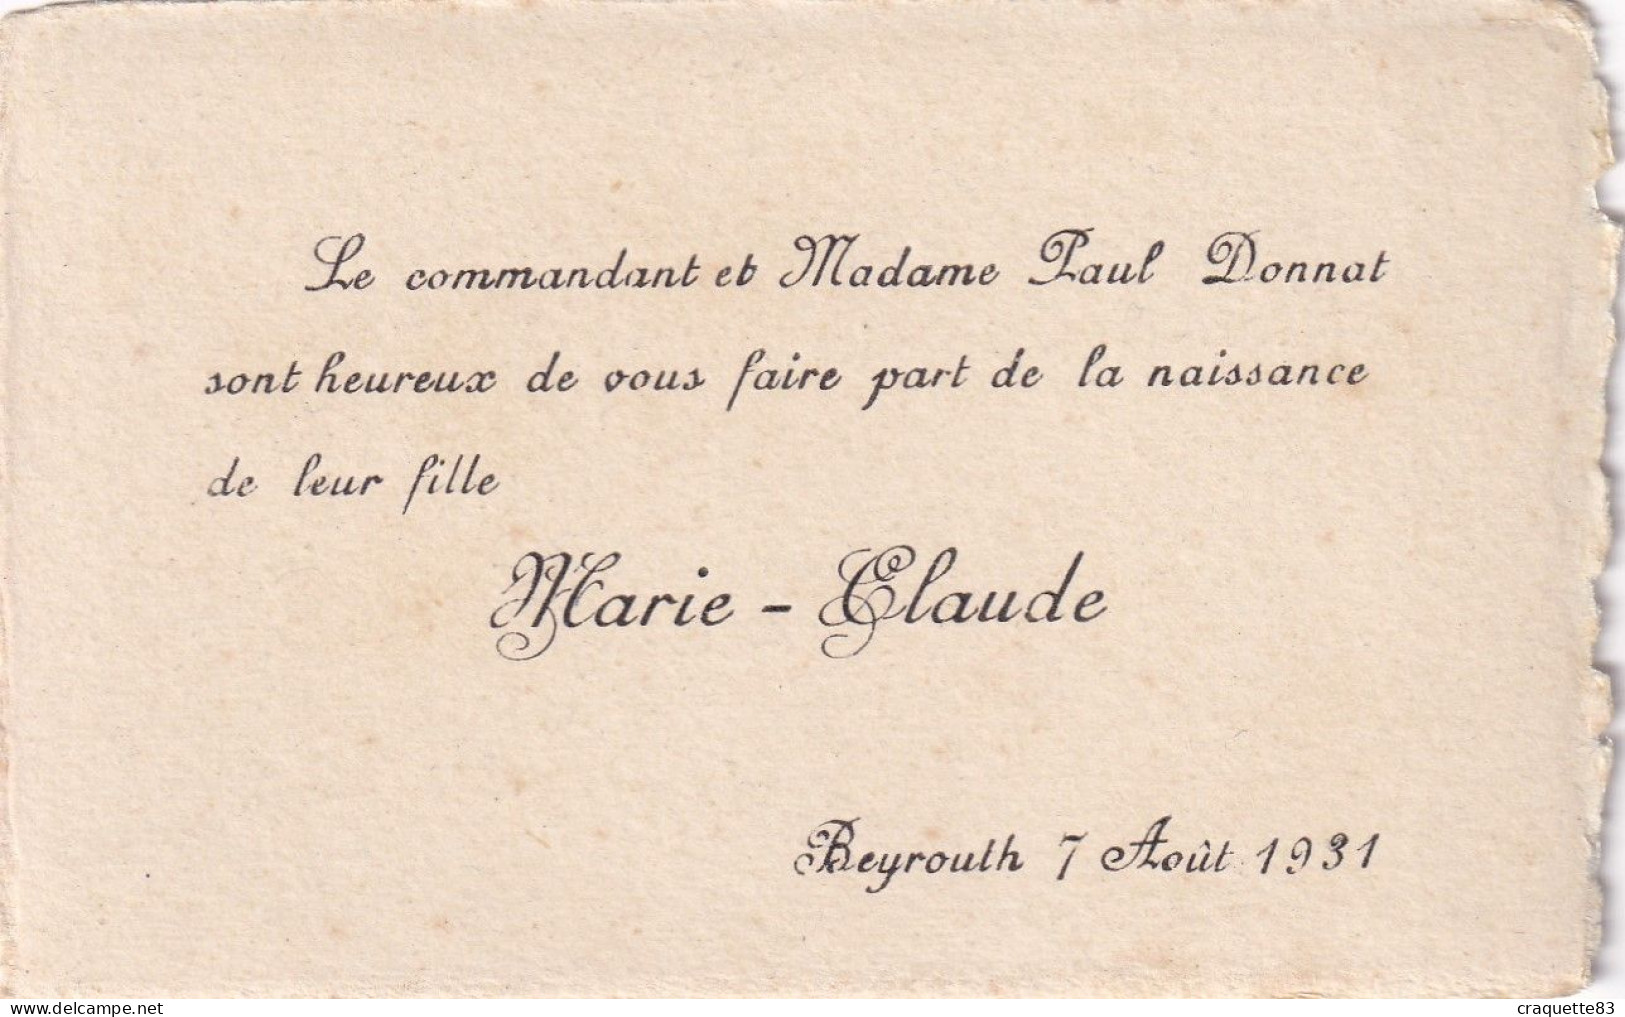 COMMANDANT PAUL DONNAT SONT HEUREUX DE FAIRE PART NAISSANCE FILLE MARIE-CLAUDE  BEYROUTH 7 AOUT 1931 - Birth & Baptism